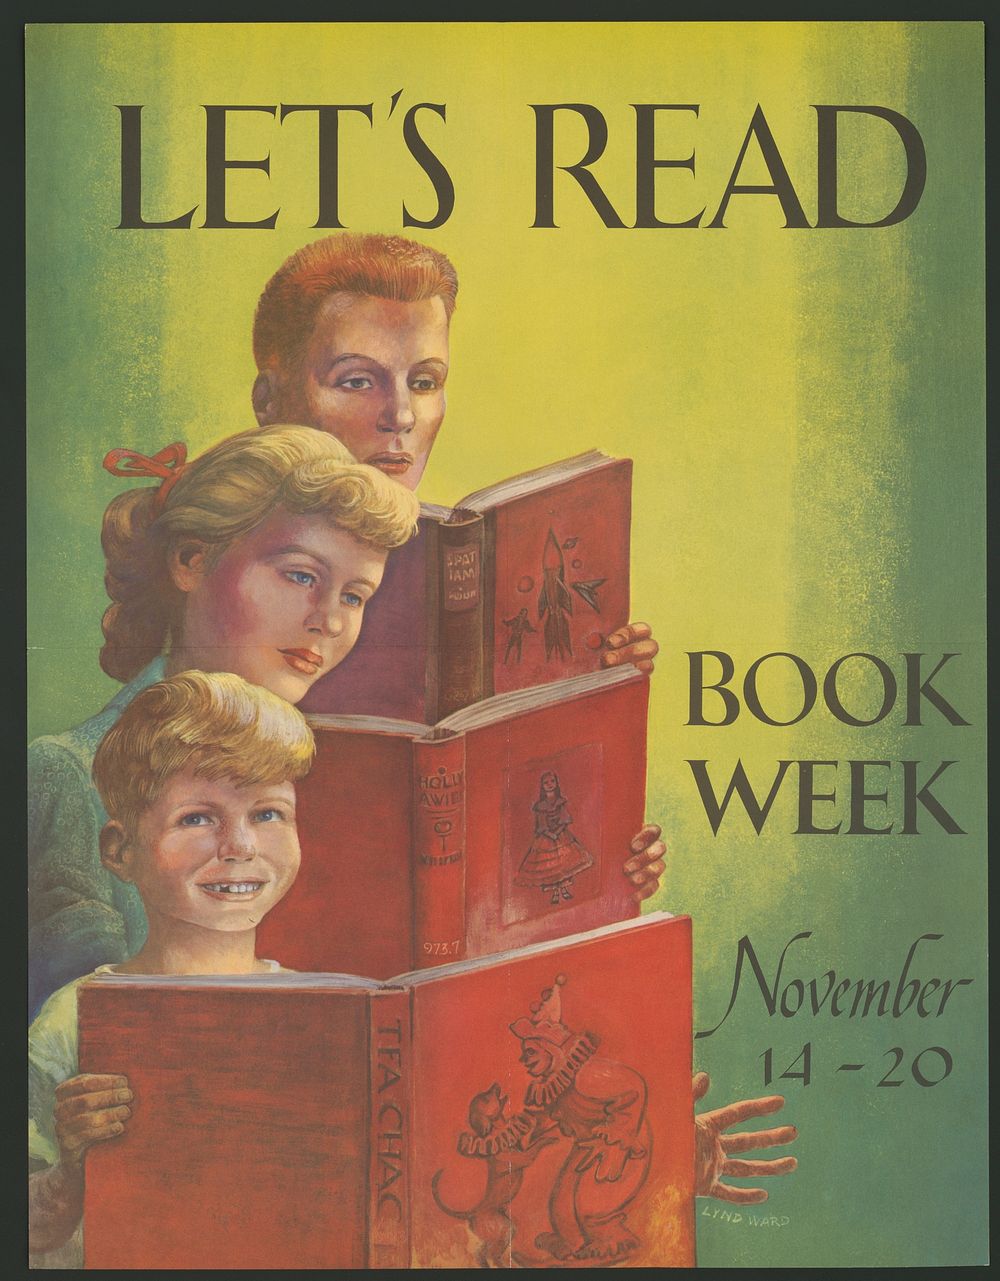 Let's read, book week, Nov. 14-20